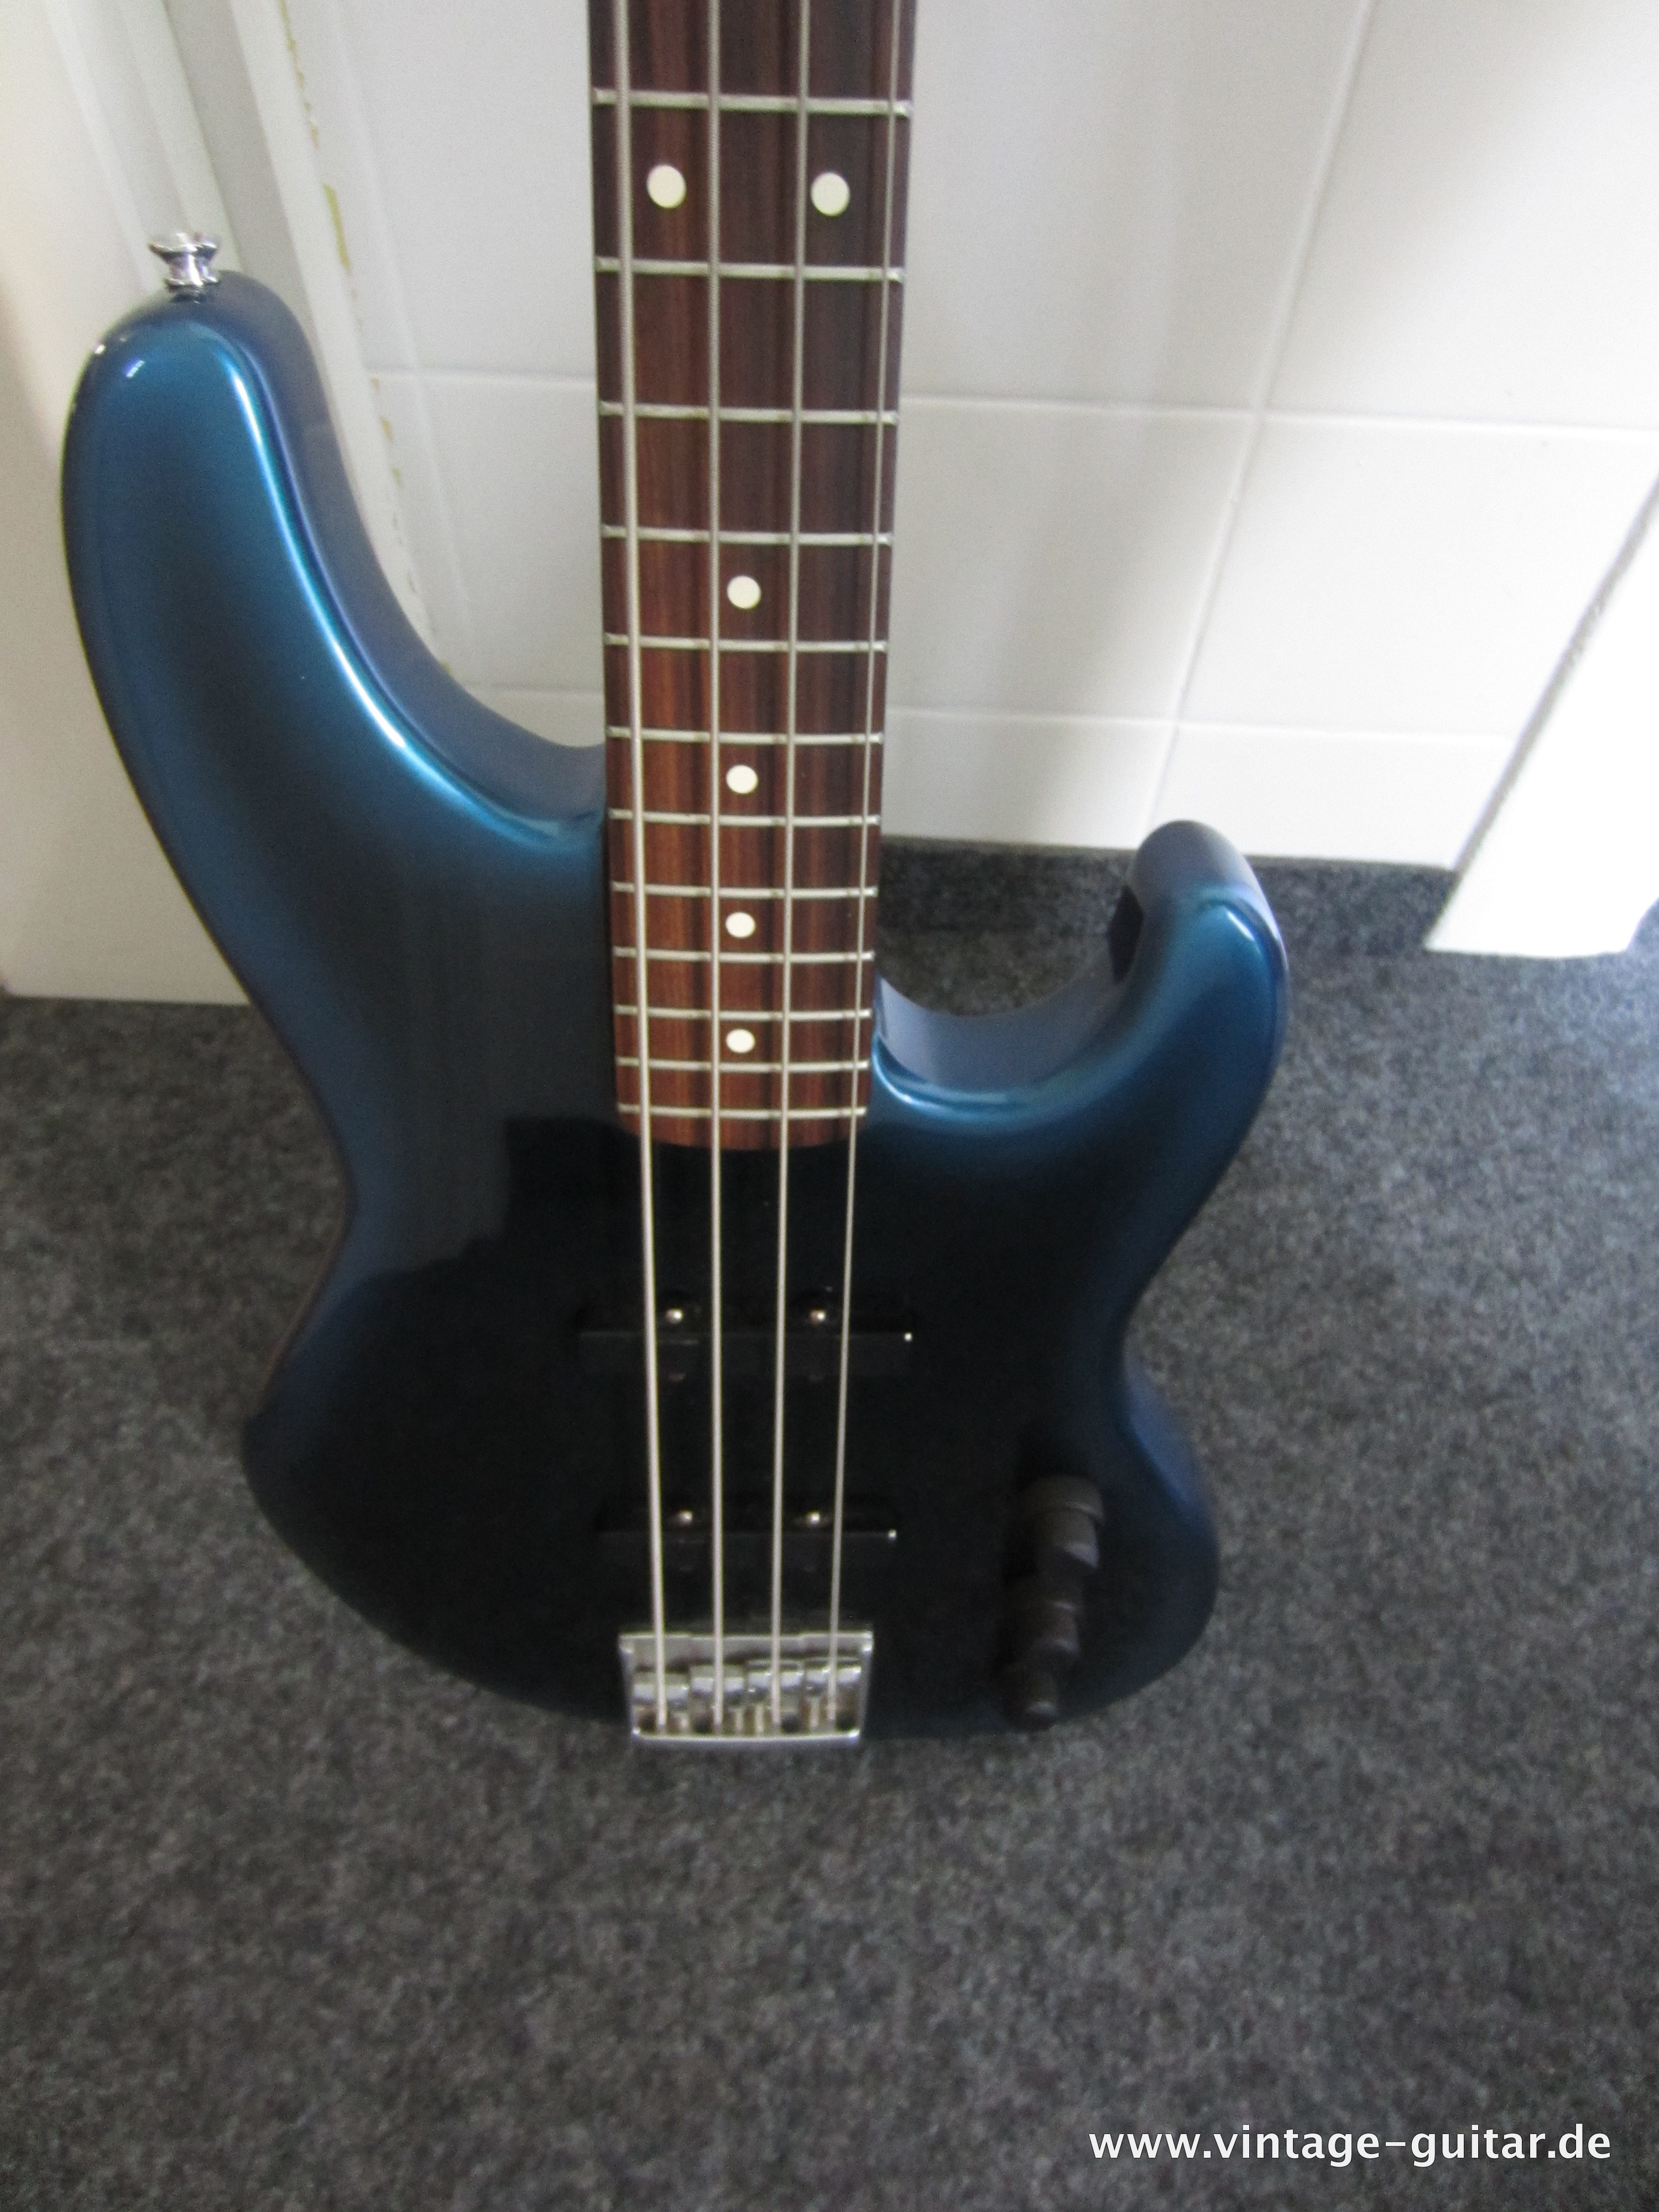 Fender-Jazz-Bass-Special-1990-blue-burst-004.jpg